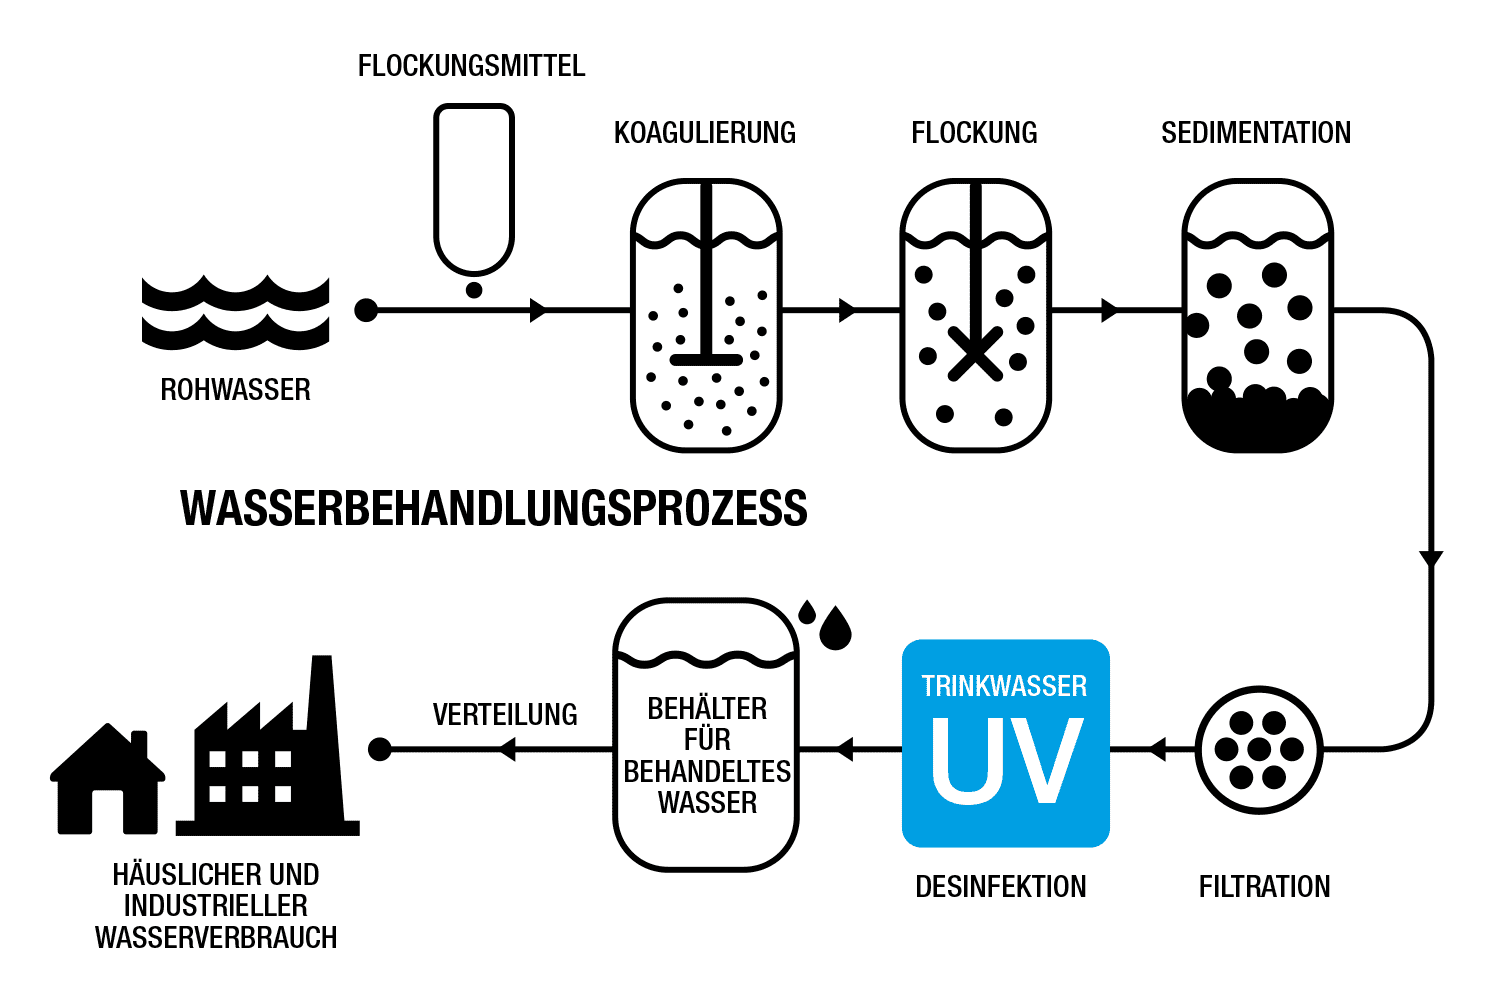 Einsatzort des UV-Systems in einem Trinkwasseraufbereitungsprozess.